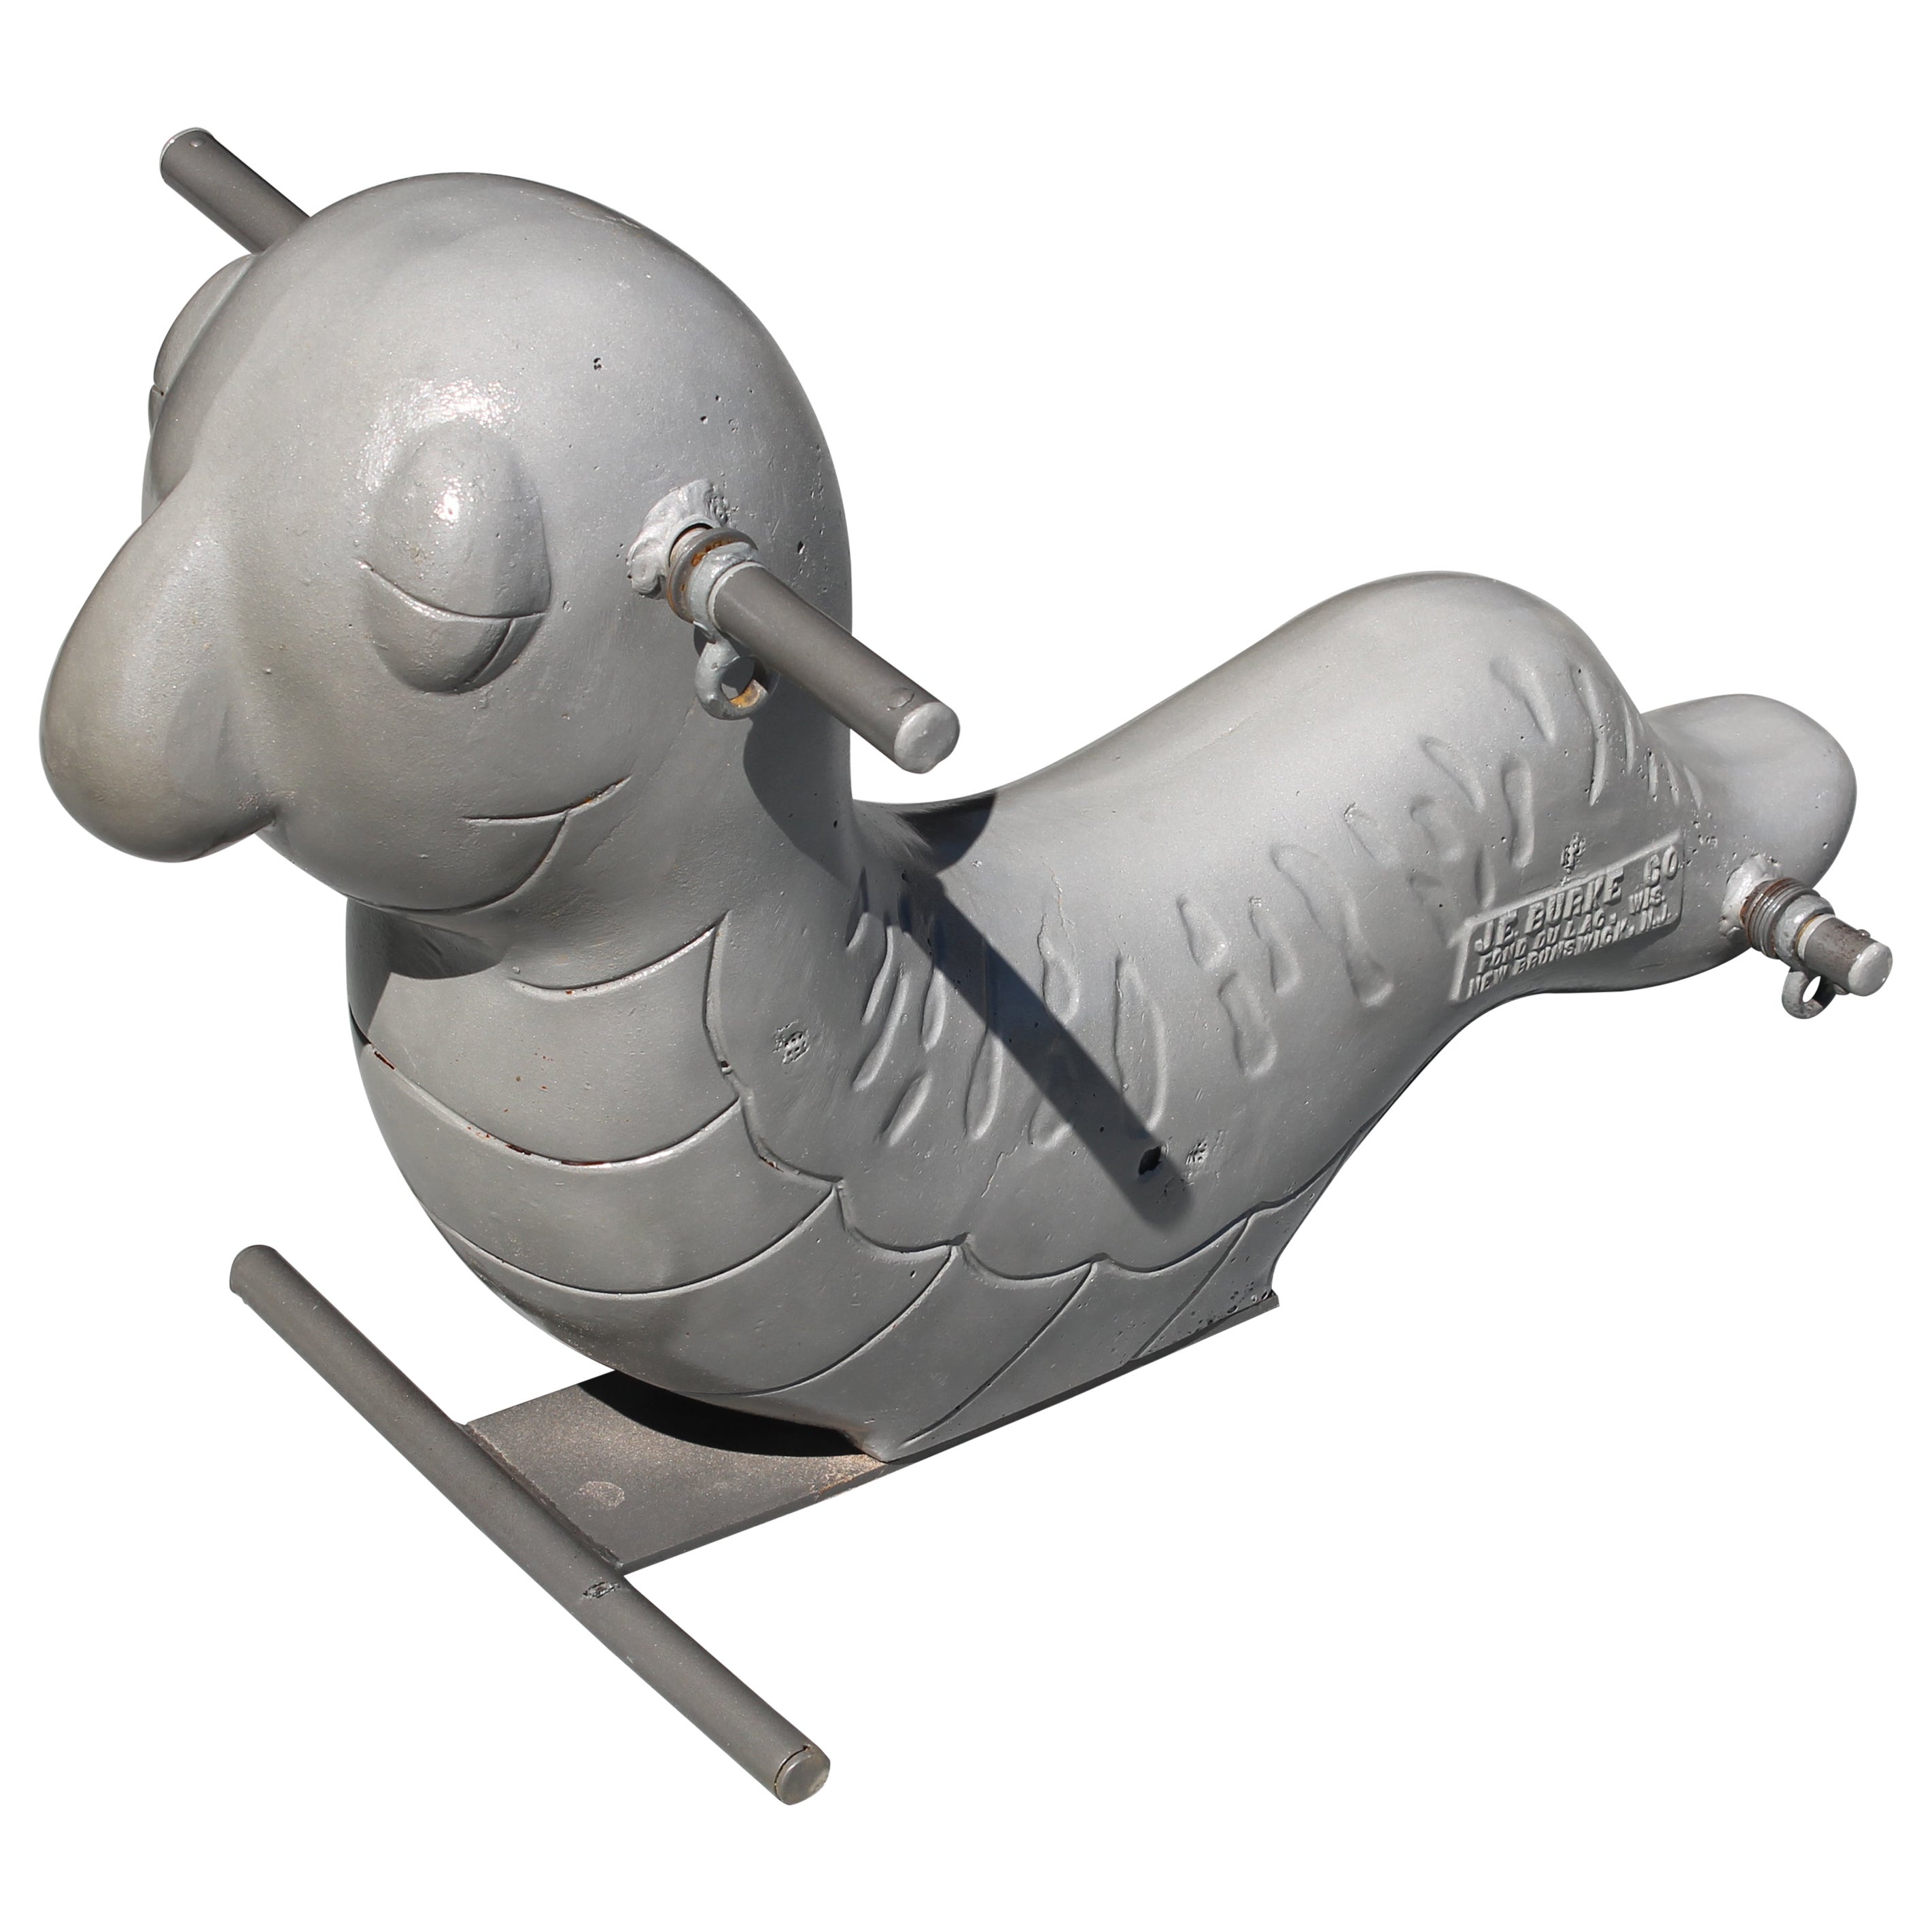 Aluminum Inchworm Playground Toy Sculpture